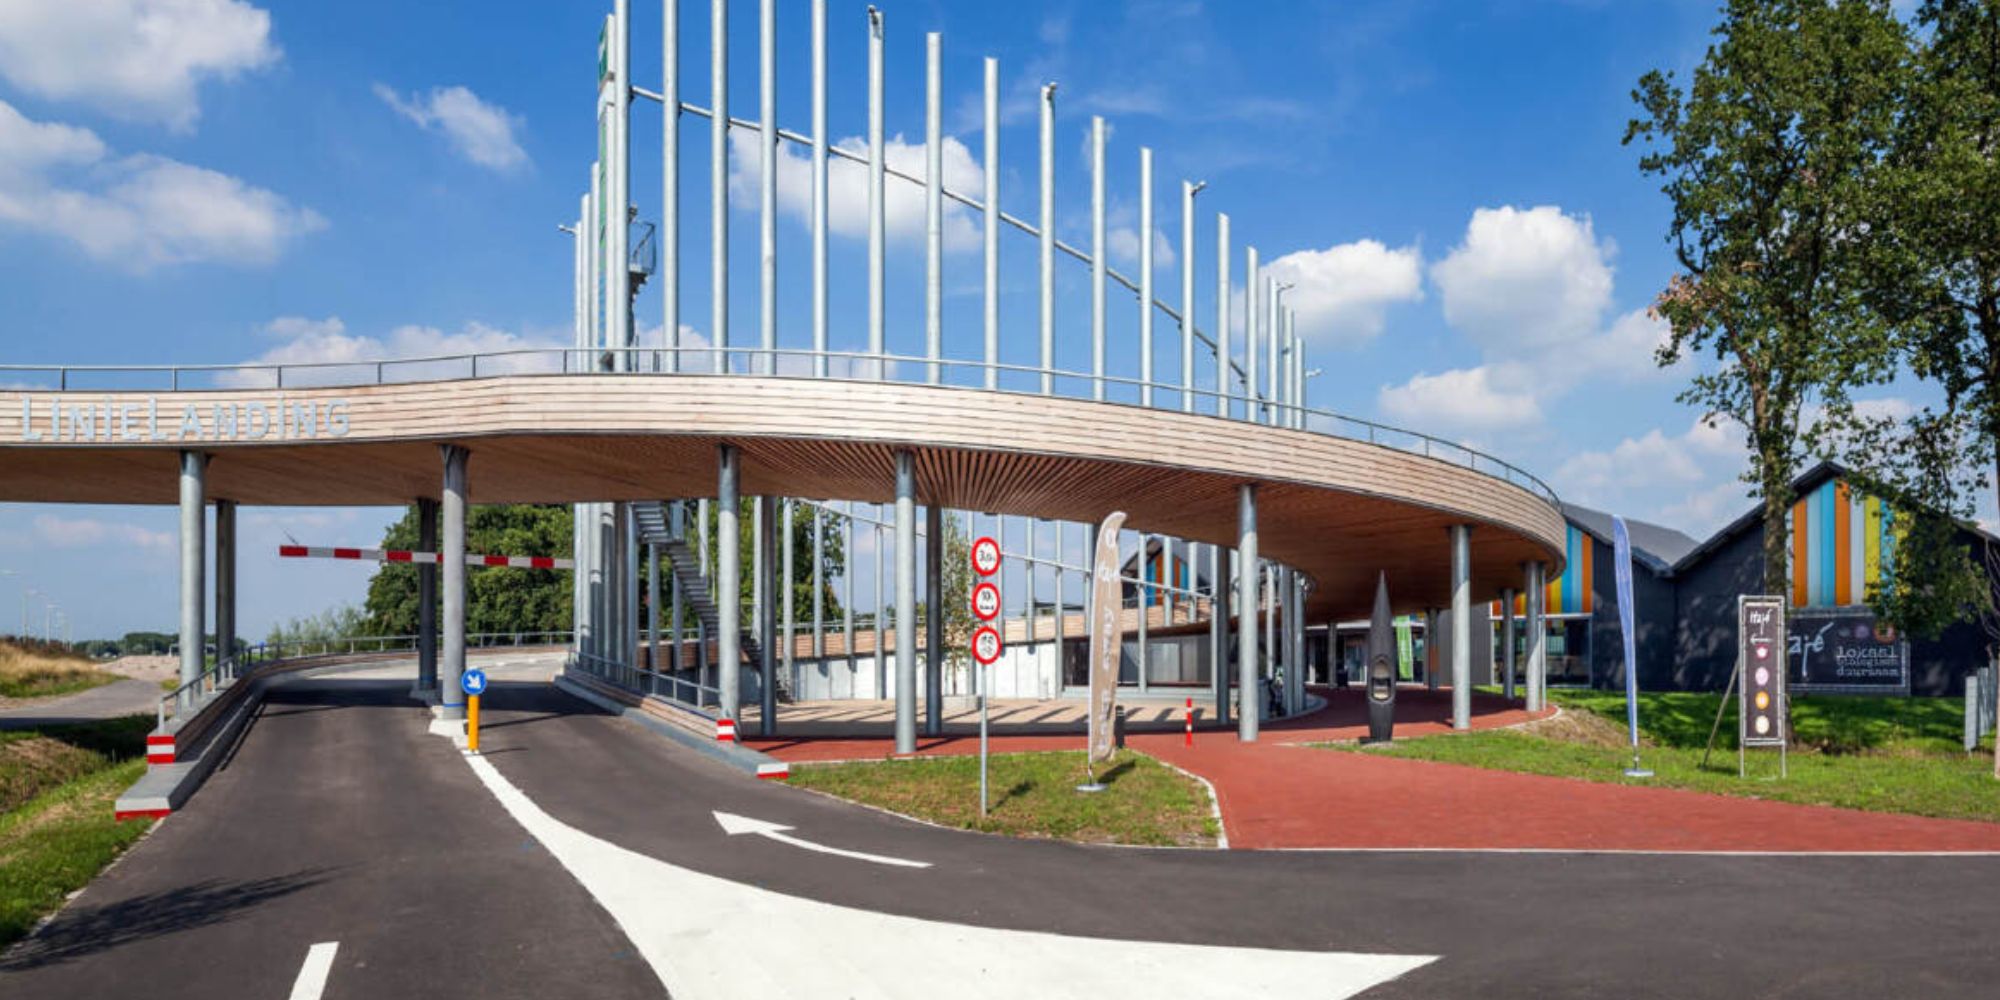 Kubiek Veenendaal Zutphen Maatwerk omgevingsplan voor transferium 'De Linielanding' aan de A27